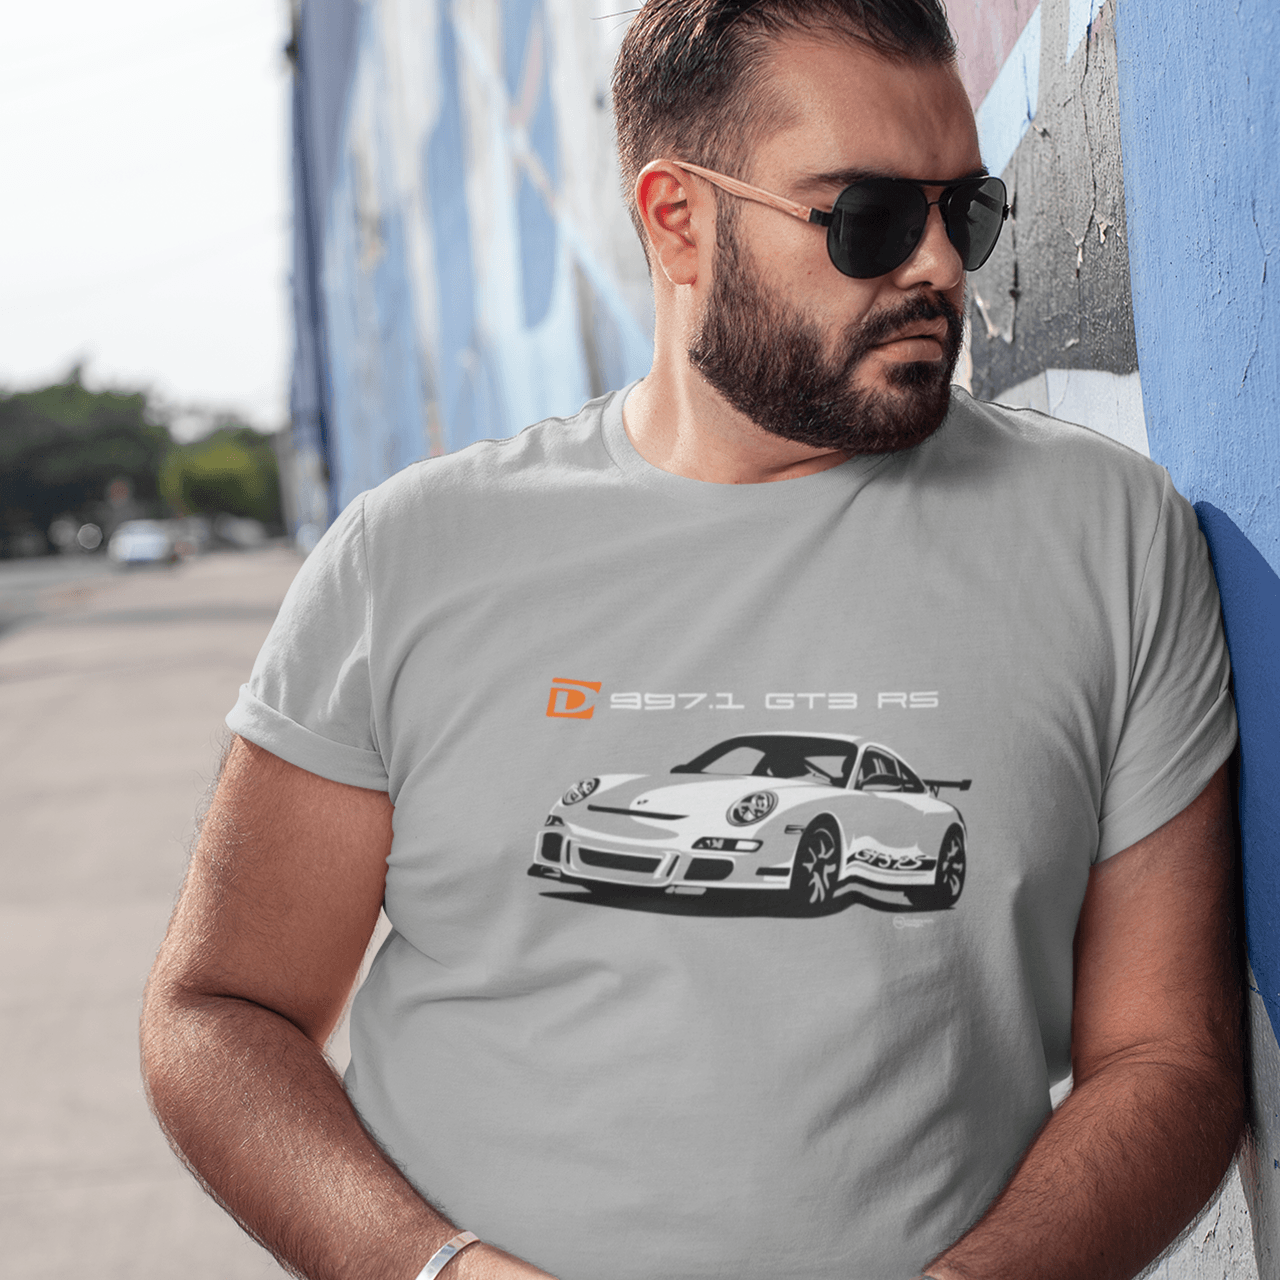 Dundon Motorsports 997.1 GT3 RS T-shirt - Dundon Motorsports